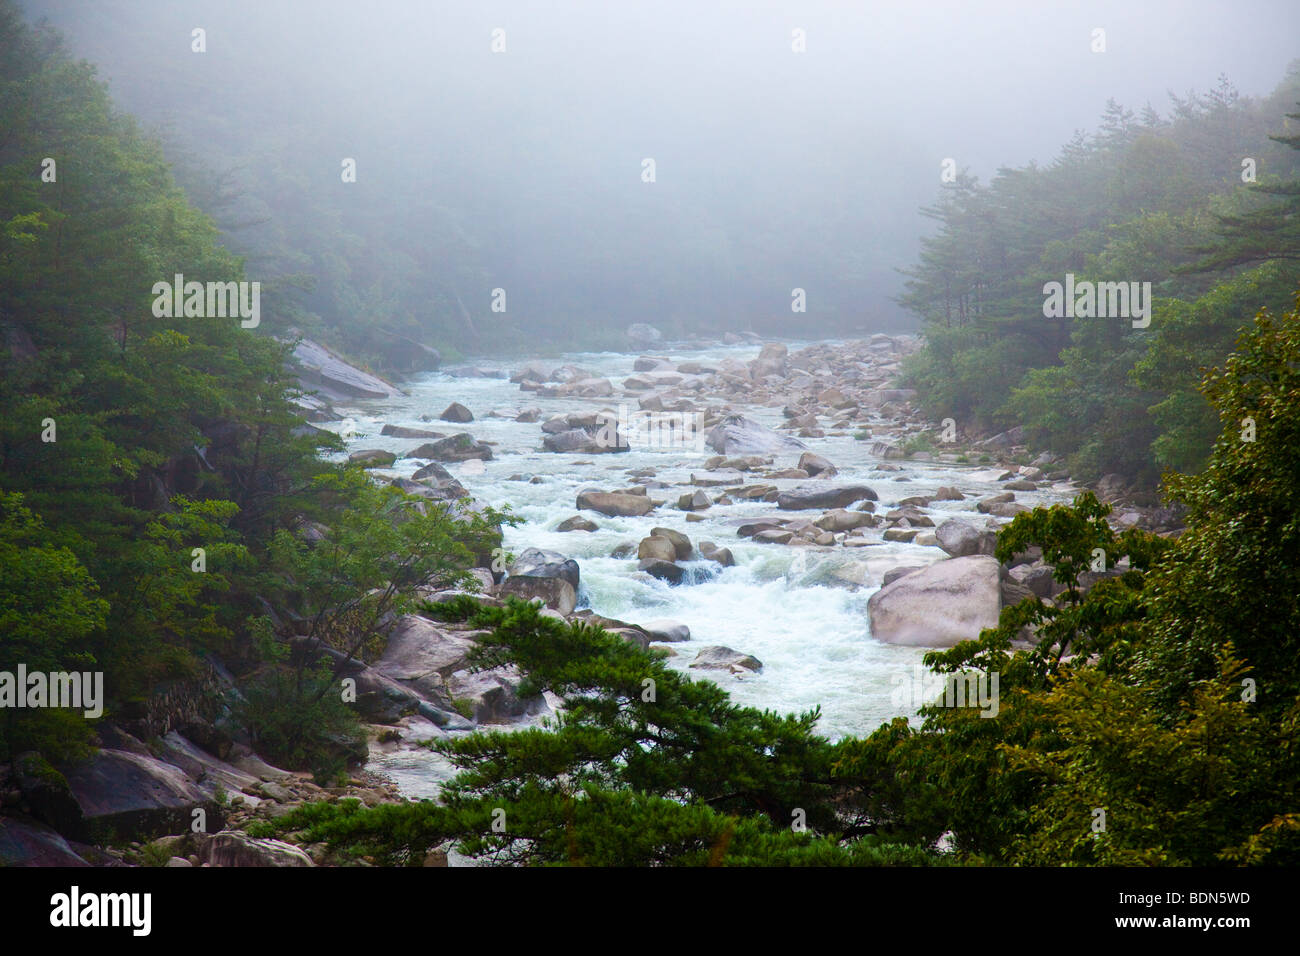 River in Soraksan National Park in South Korea Stock Photo